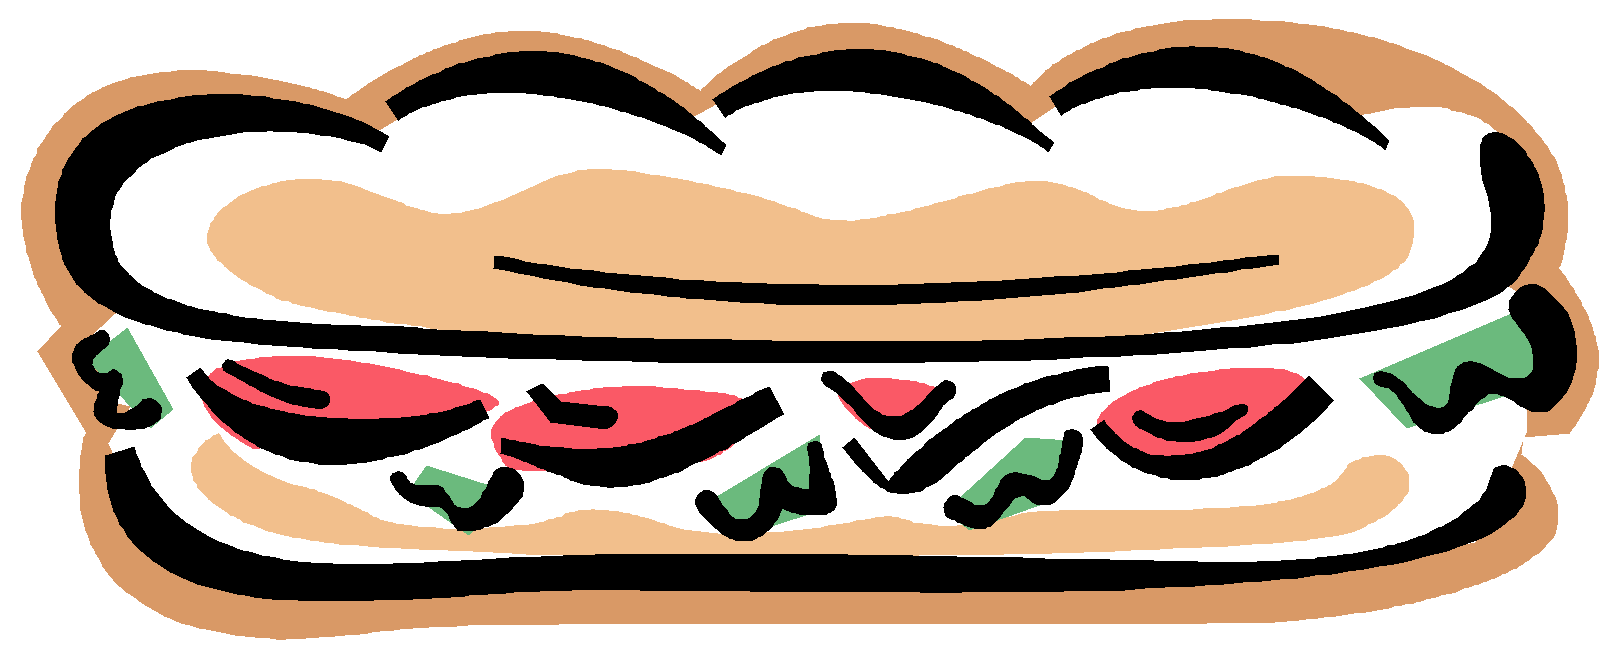 sandwich clipart toastie